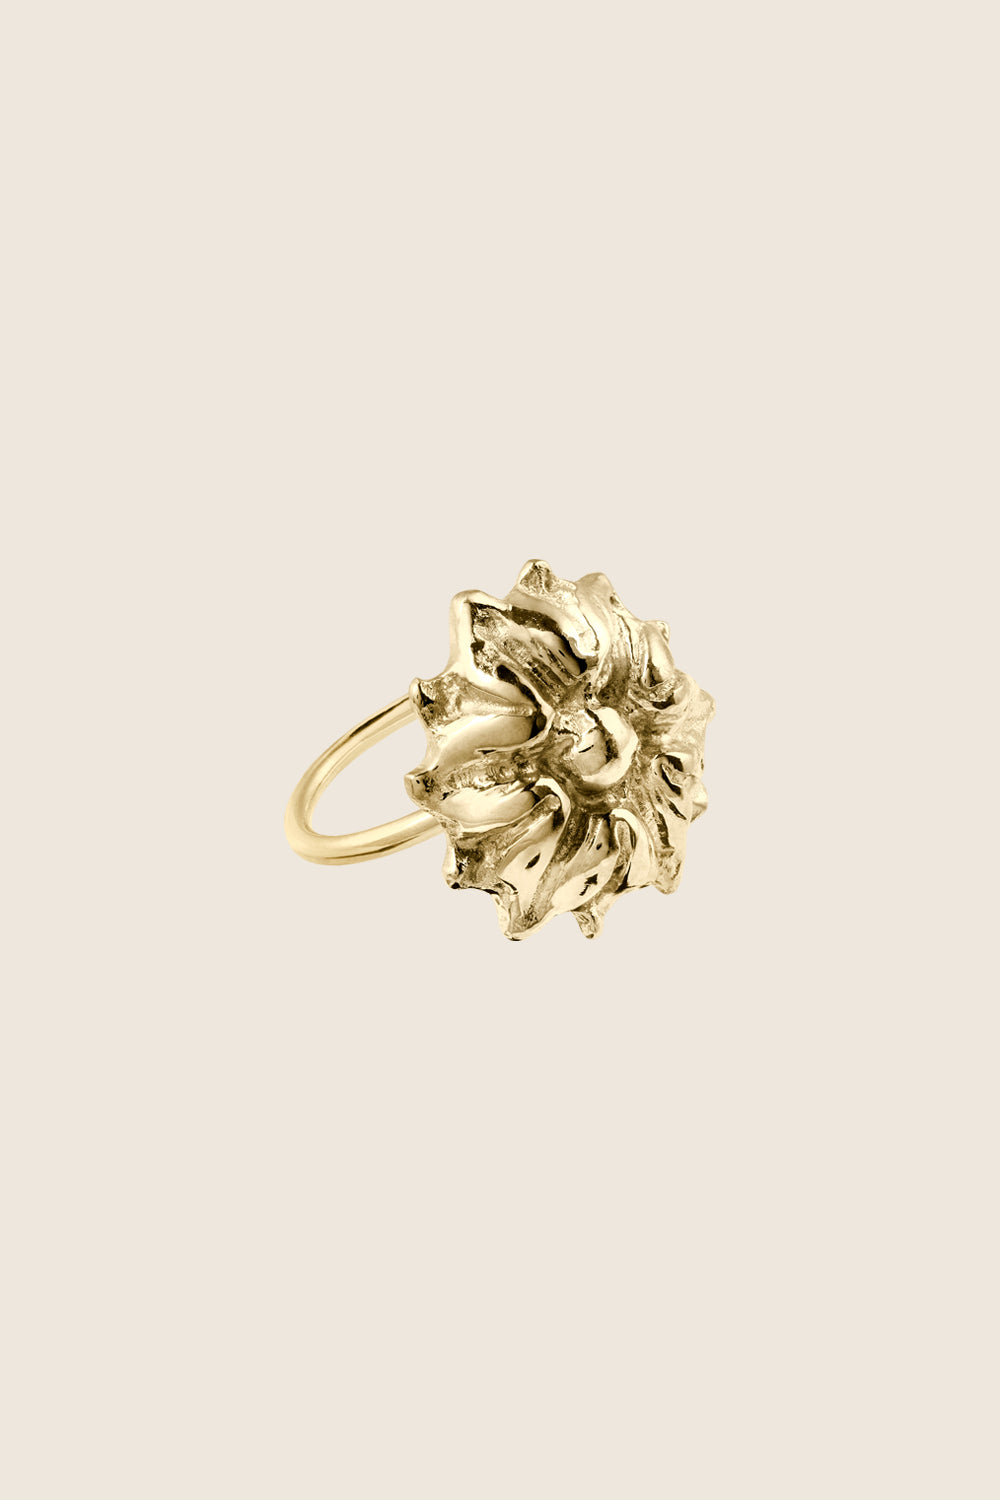 pierścionek kwiat złoto 585 BELLIS polska biżuteria artystyczna UMIAR